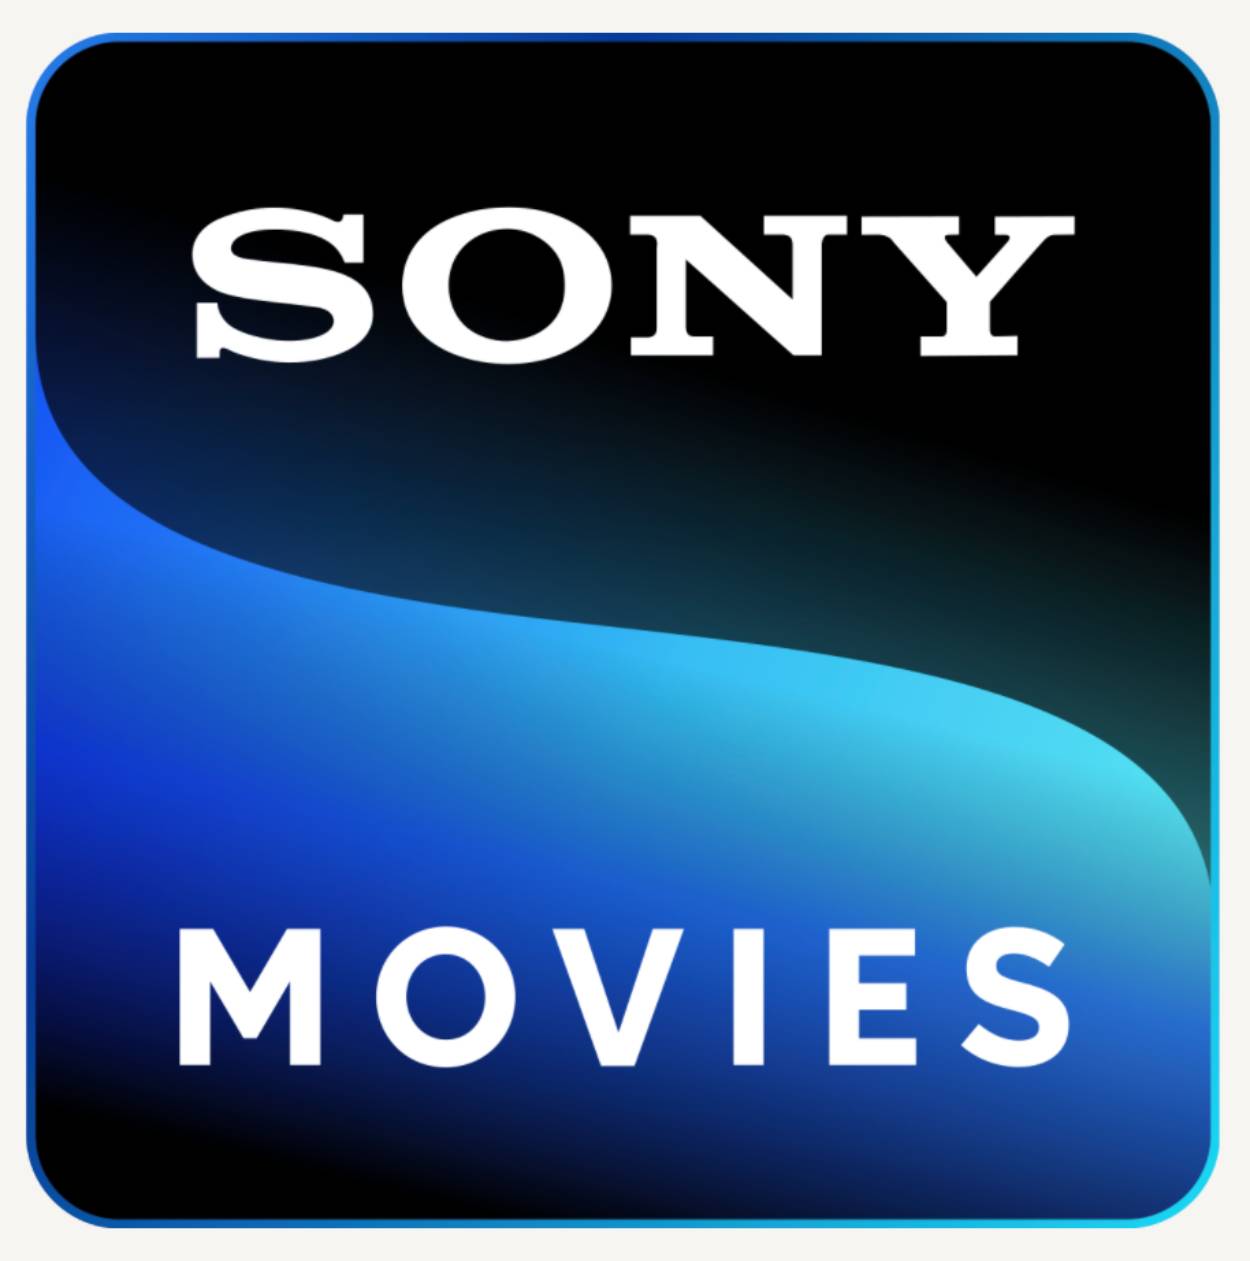 Sony Movies ahora es parte de DIRECTV y DIRECTTV GO